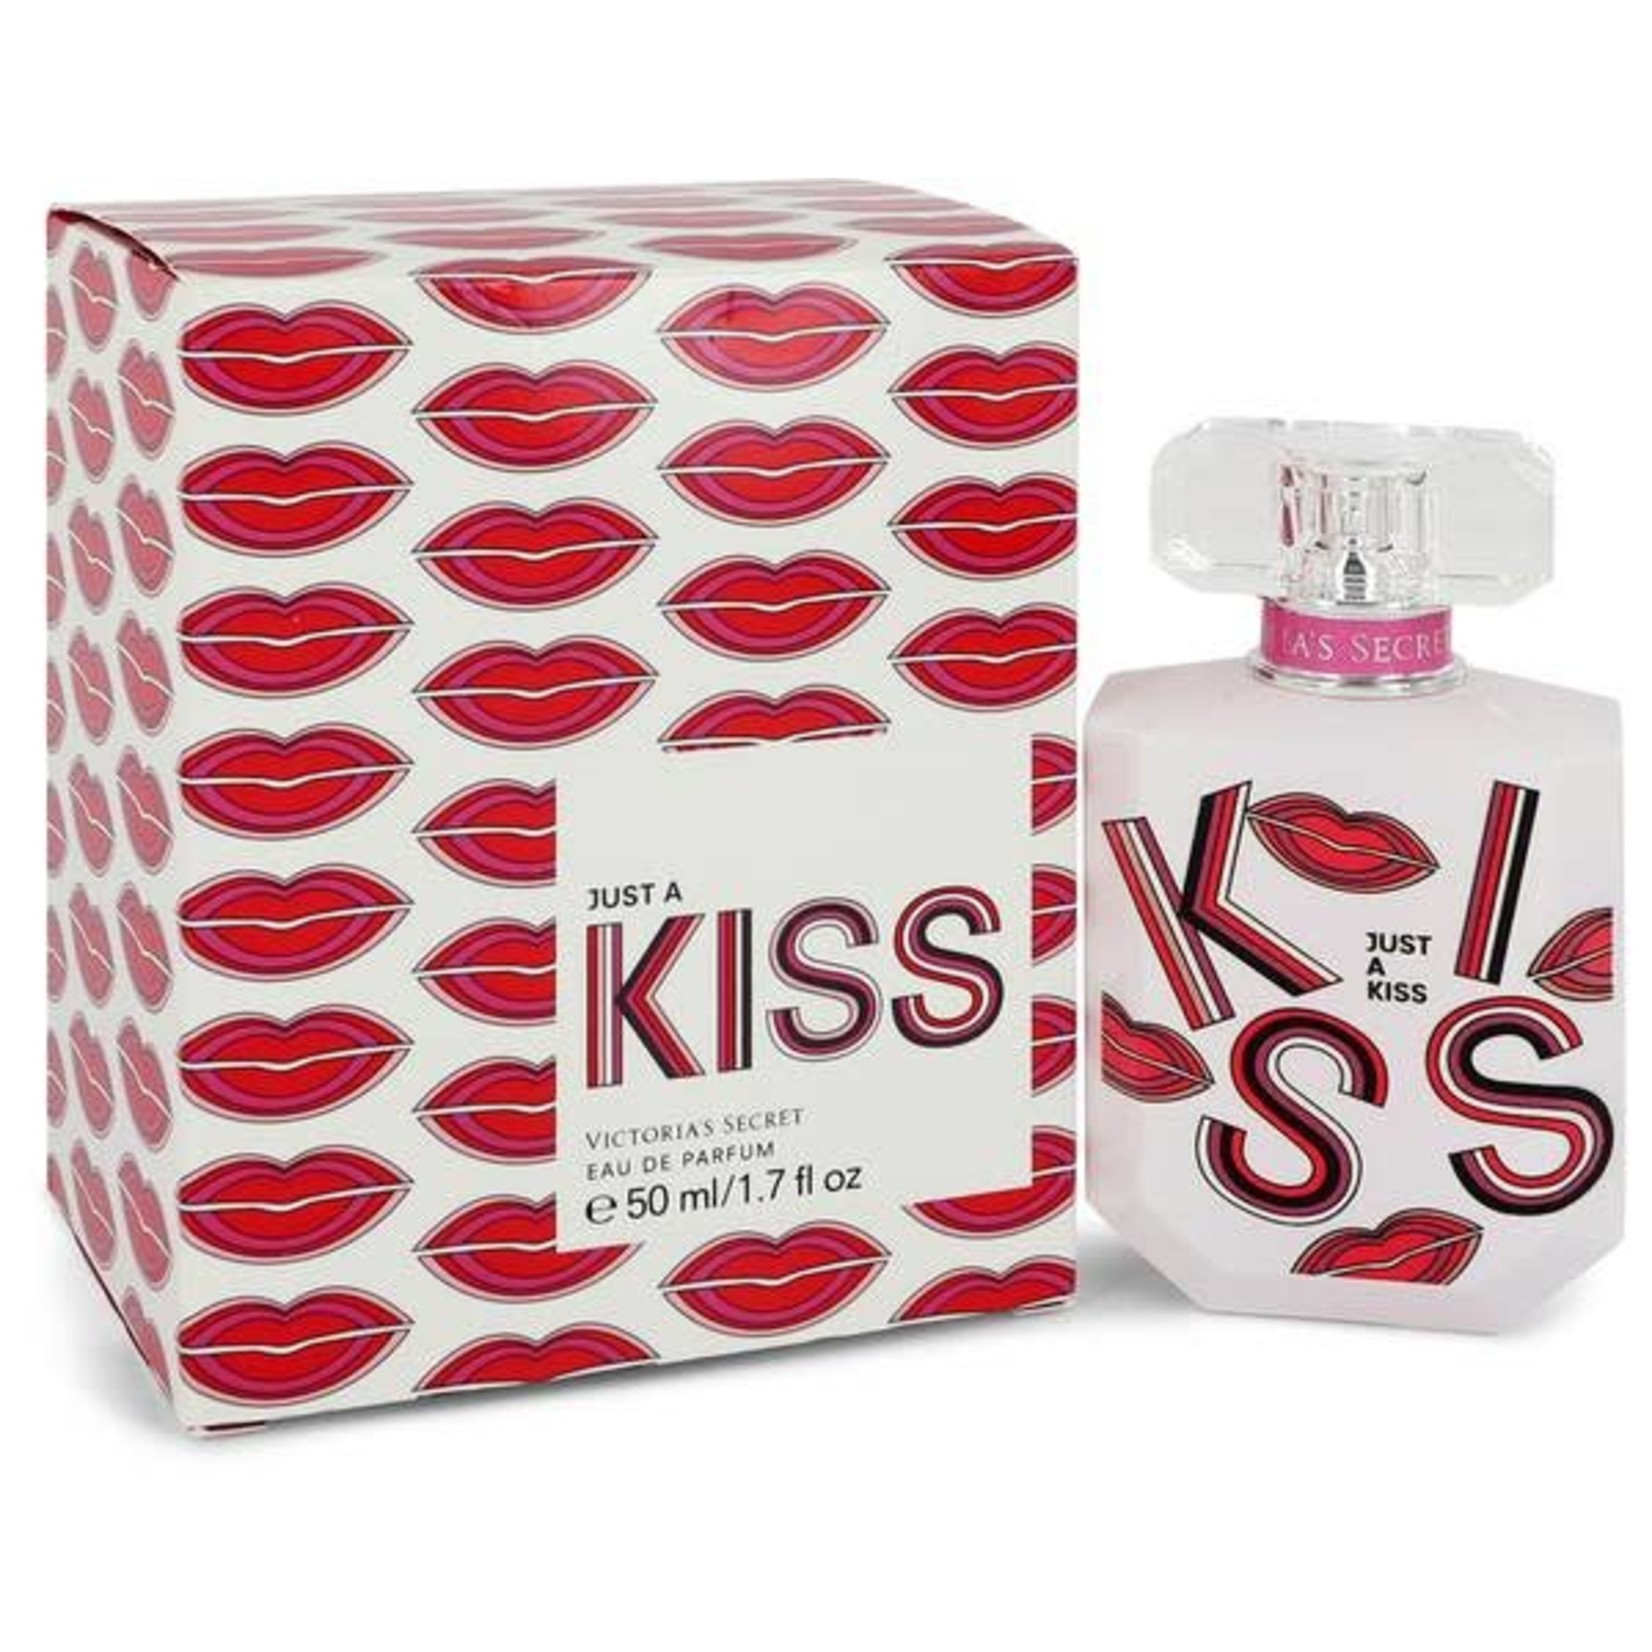 VICTORIA'S SECRET JUST A KISS 1.7 EAU DE PARFUM - Desnudo